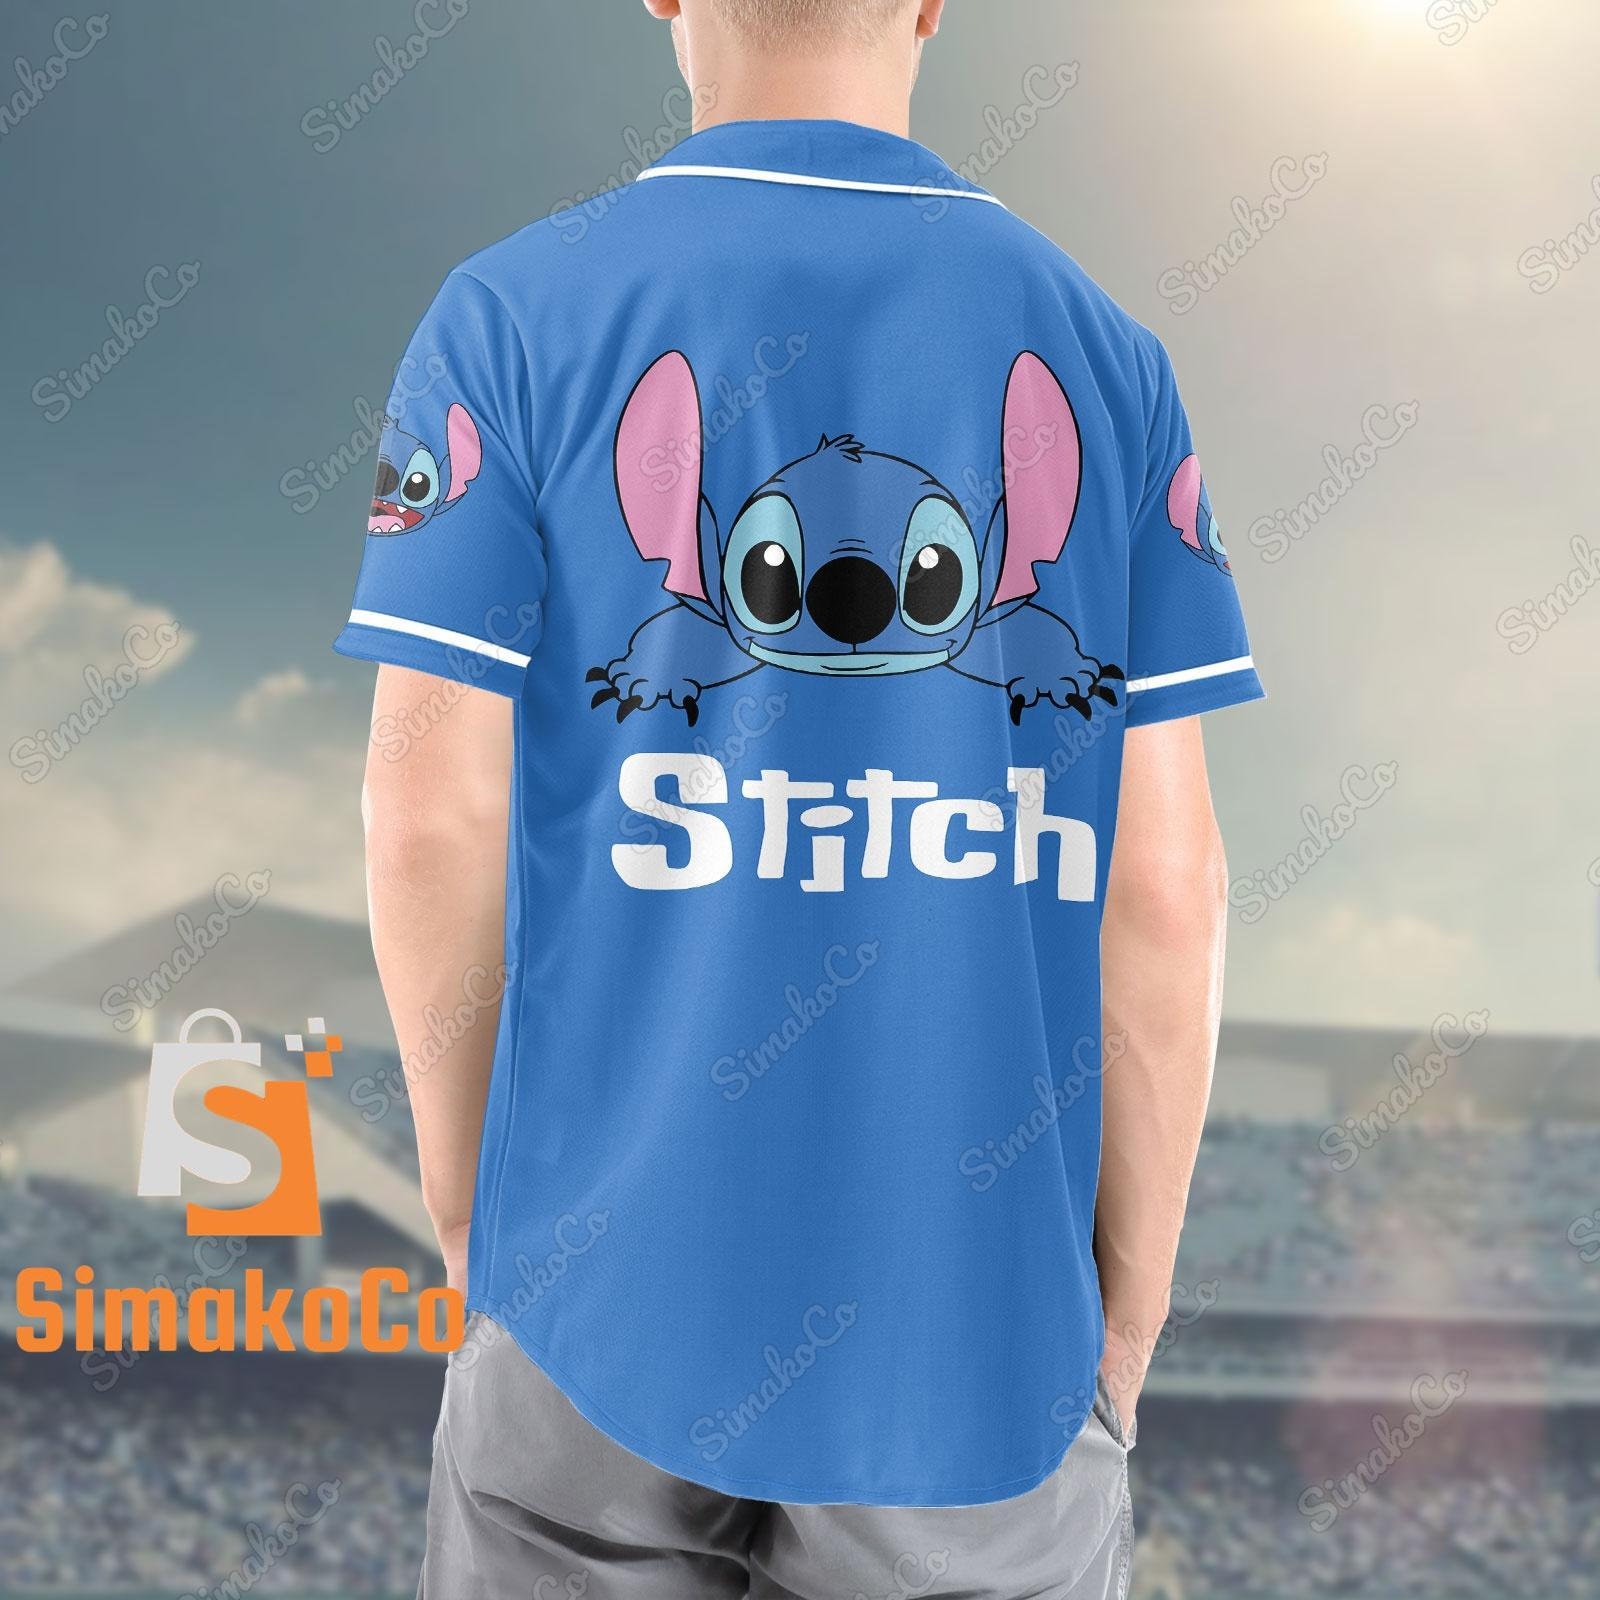 Stitch Jersey Shirt, Stitch Baseball Jersey, Disney Stitch Shirt